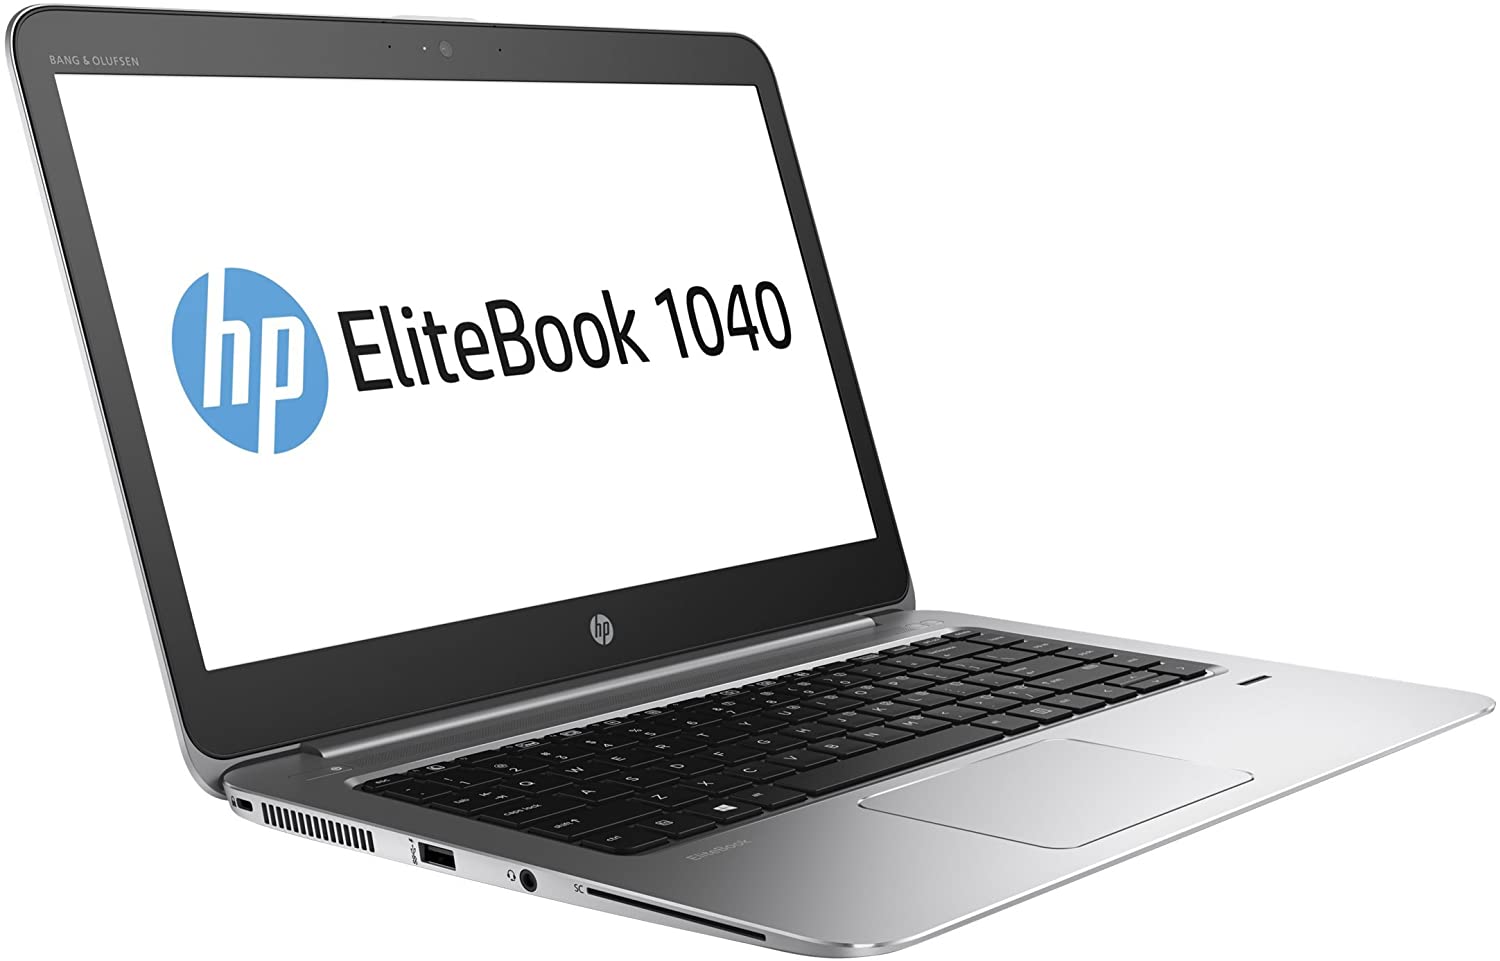 Ordinateur portable HP EliteBook Folio 1040 G3 remis à neuf (Intel Core i7/8 Go de RAM/256 Go de SSD/Windows 10)